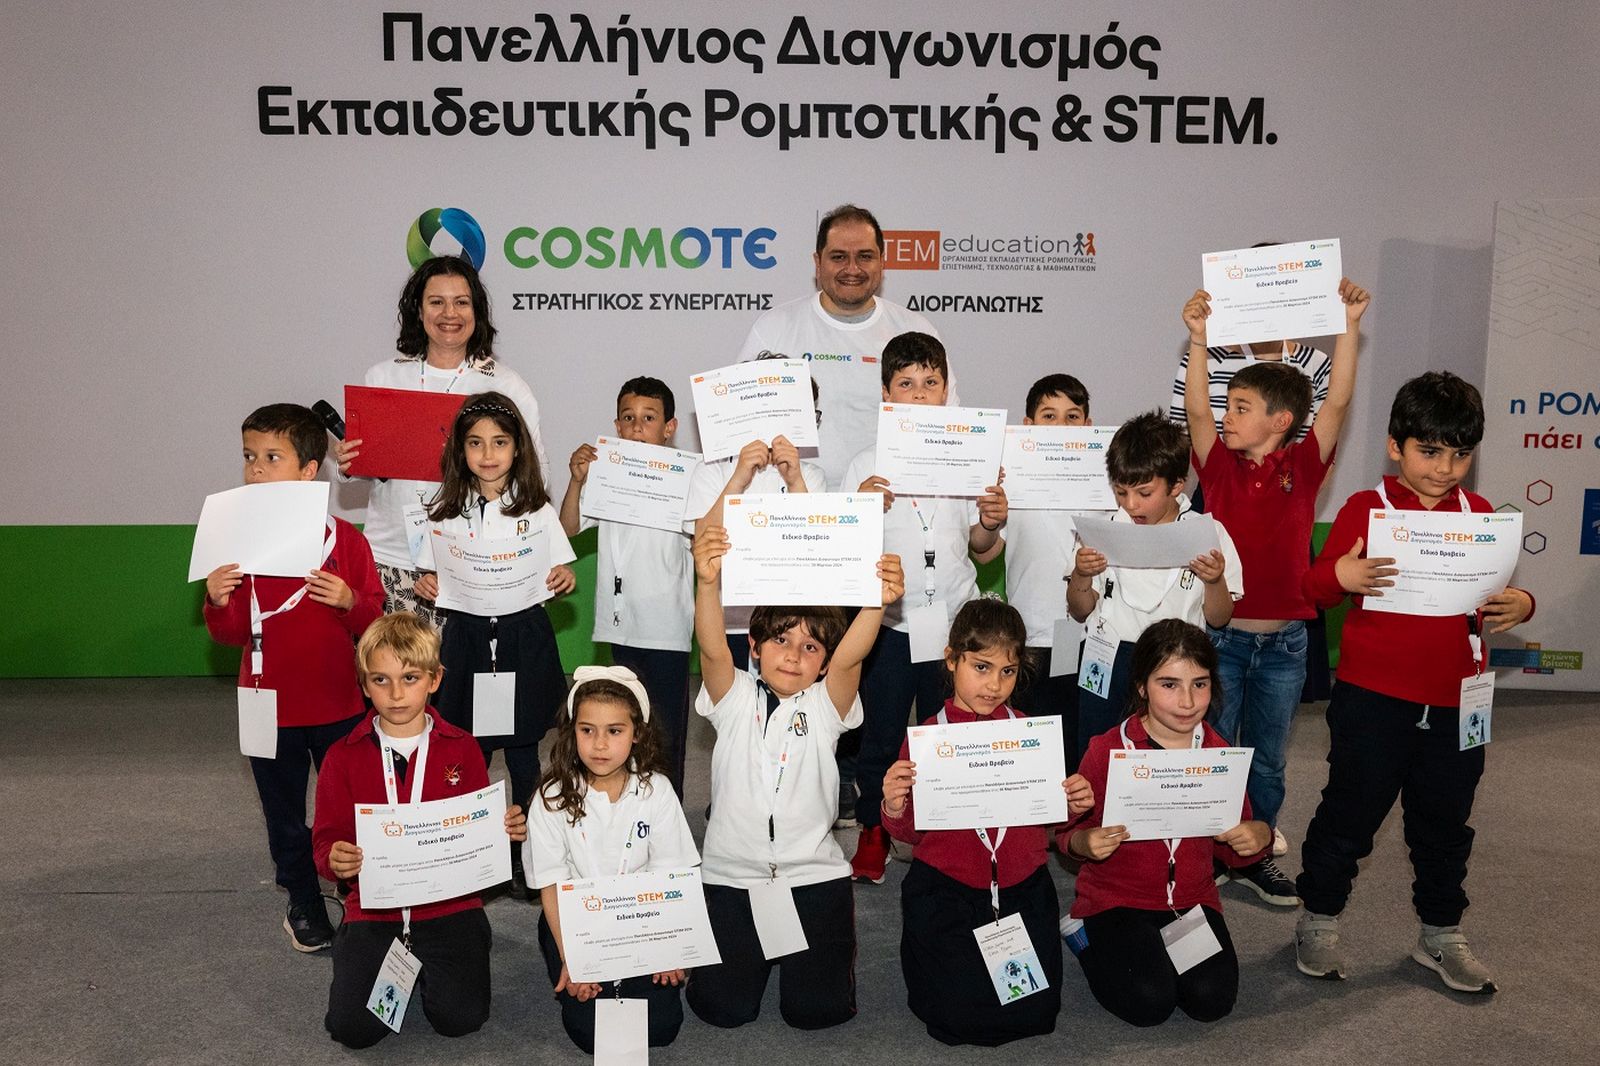 Μία δεκαετία τώρα η COSMOTE συμβάλλει στη διάδοση και ανάπτυξη της Εκπαιδευτικής Ρομποτικής στην Ελλάδα